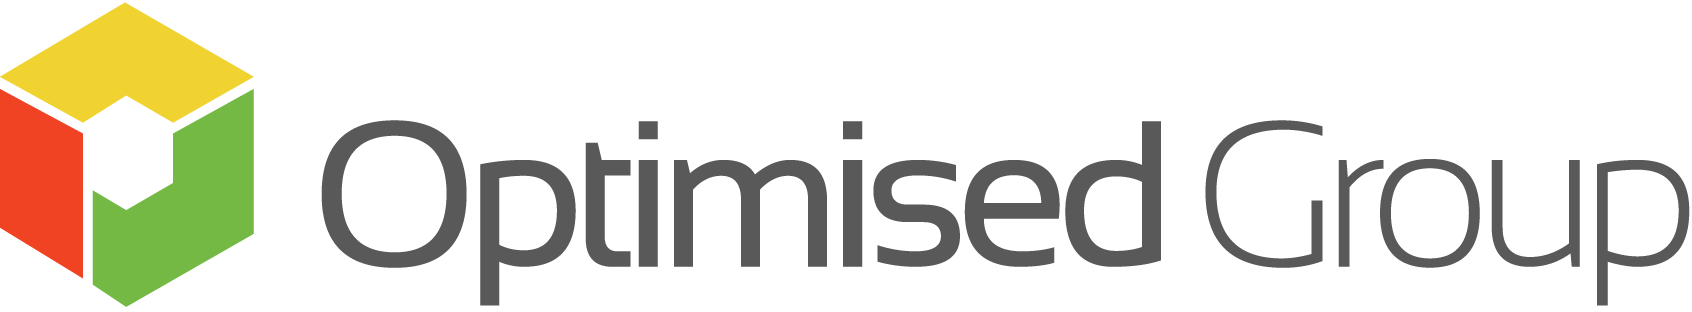 logo for Optimised